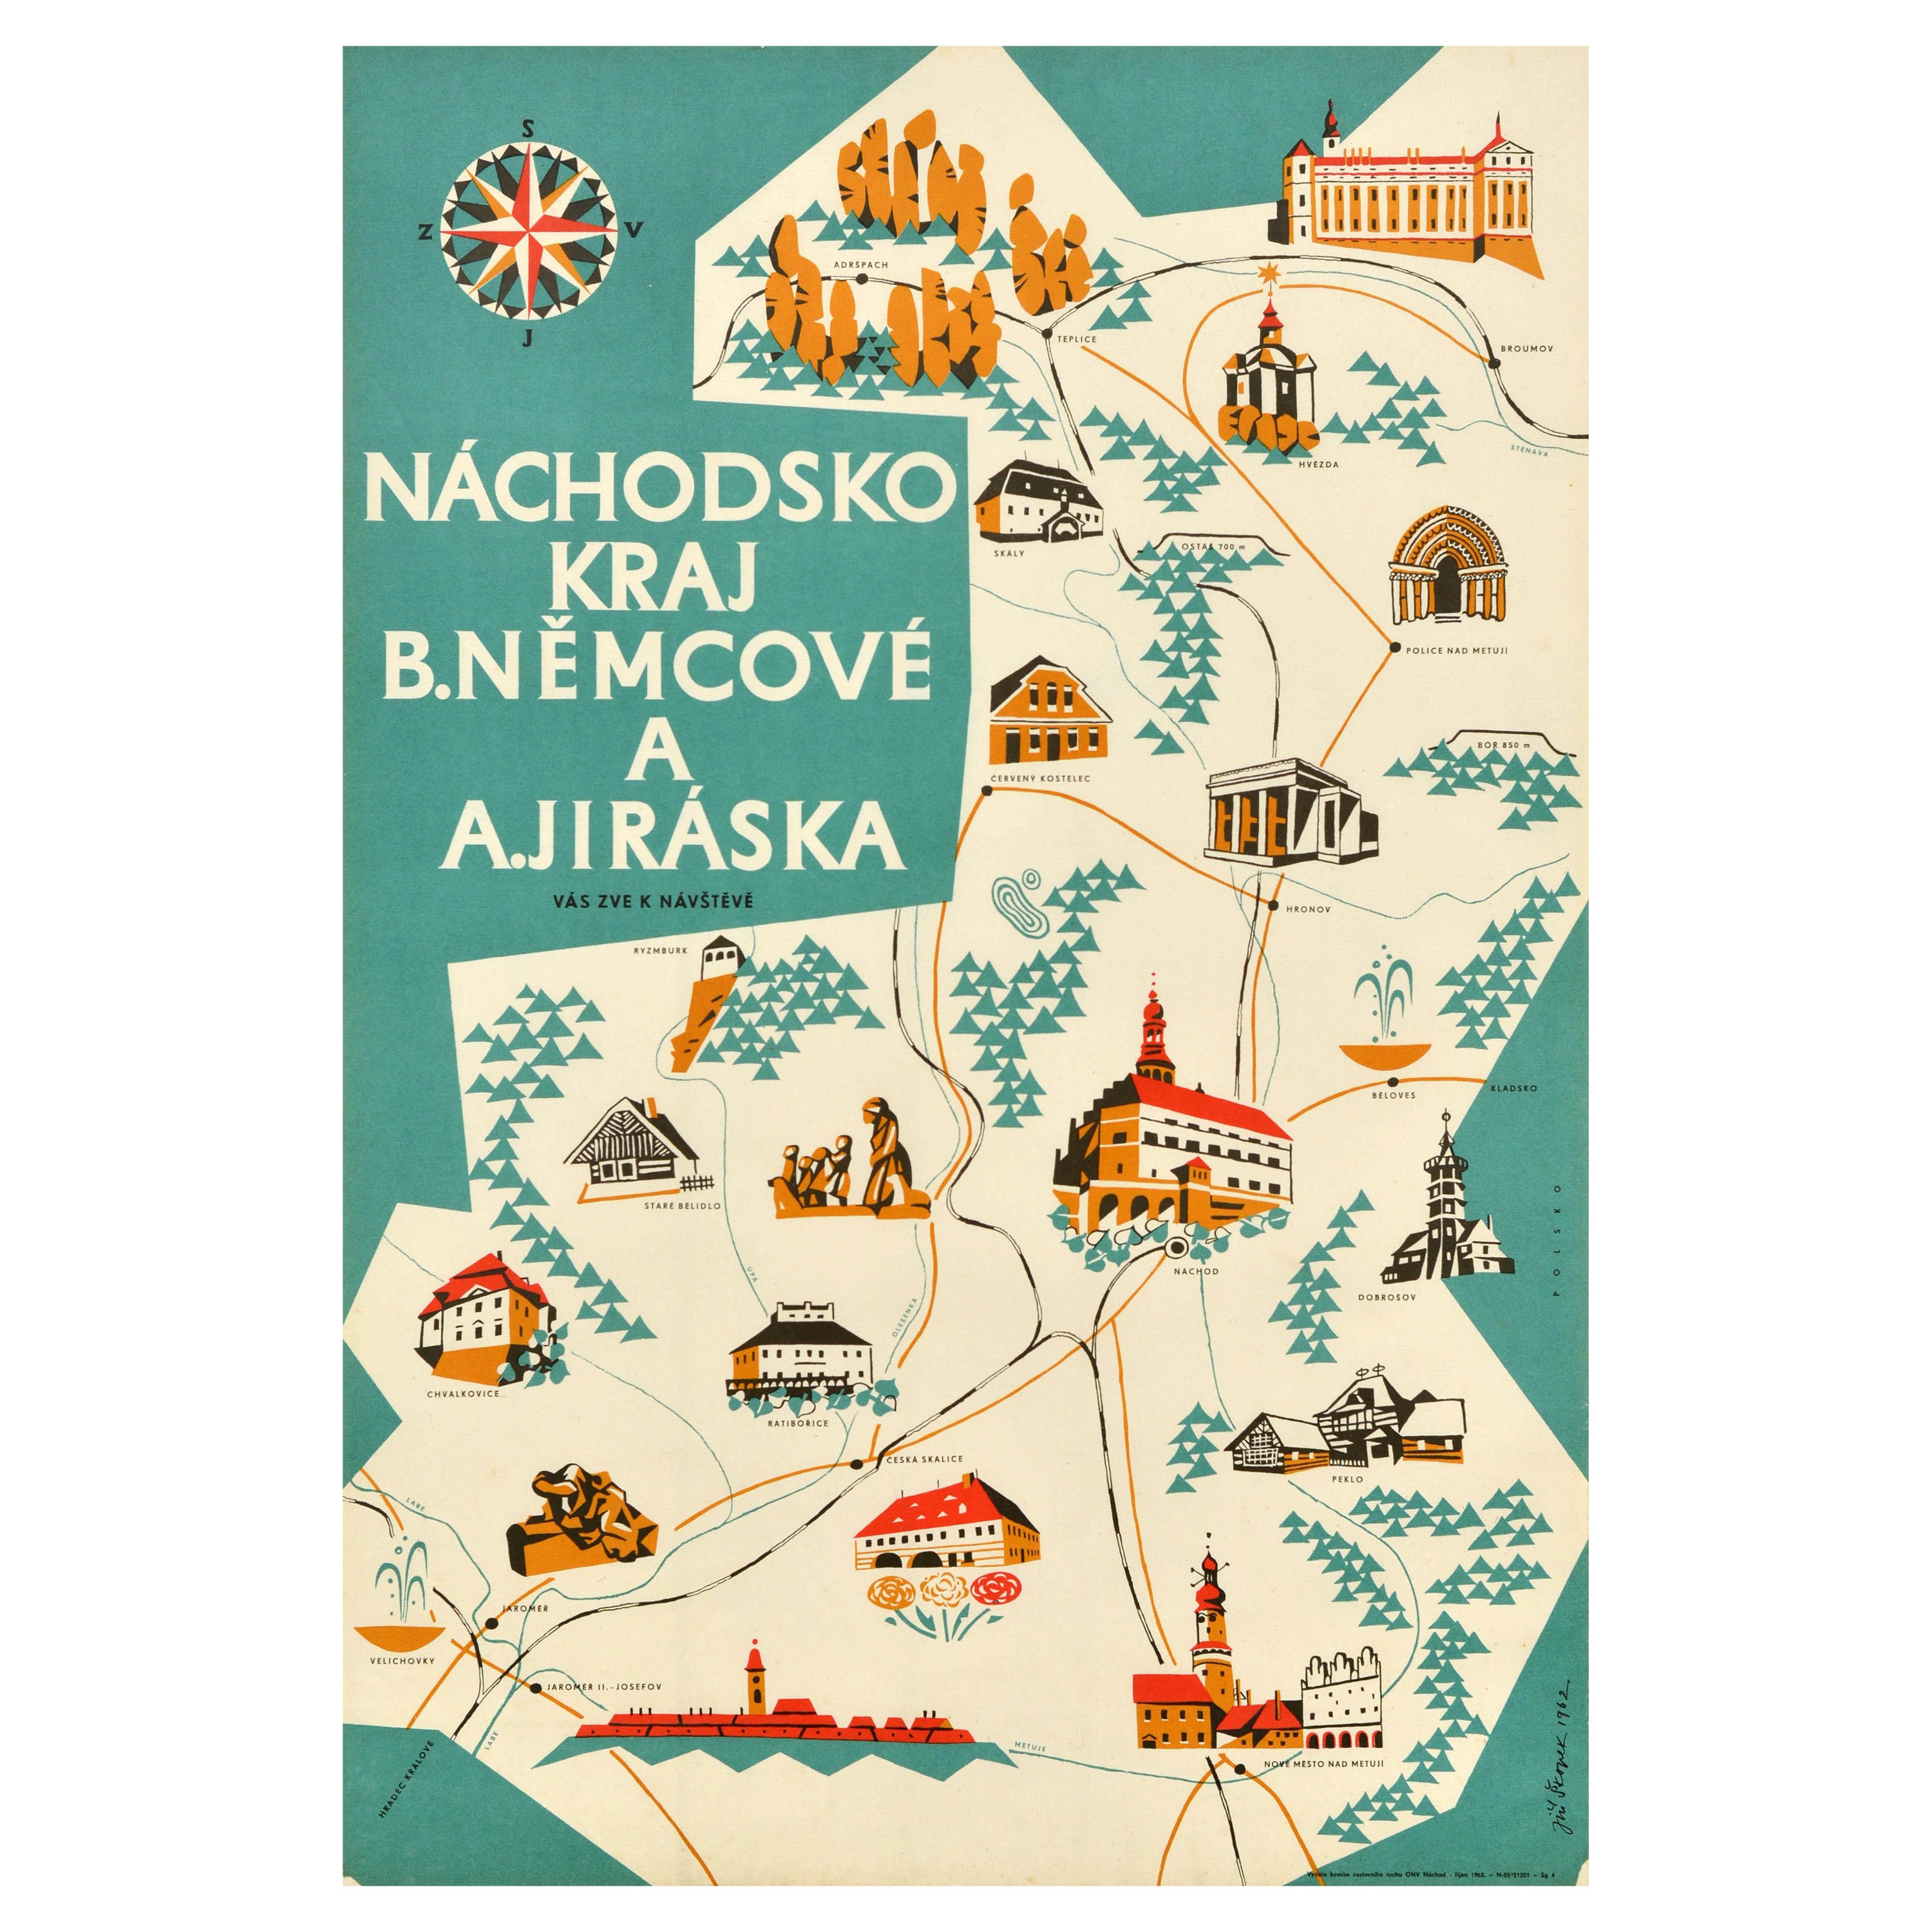 Carte de voyage vintage originale de la région de Nachod en Tchécoslovaquie, design tchèque